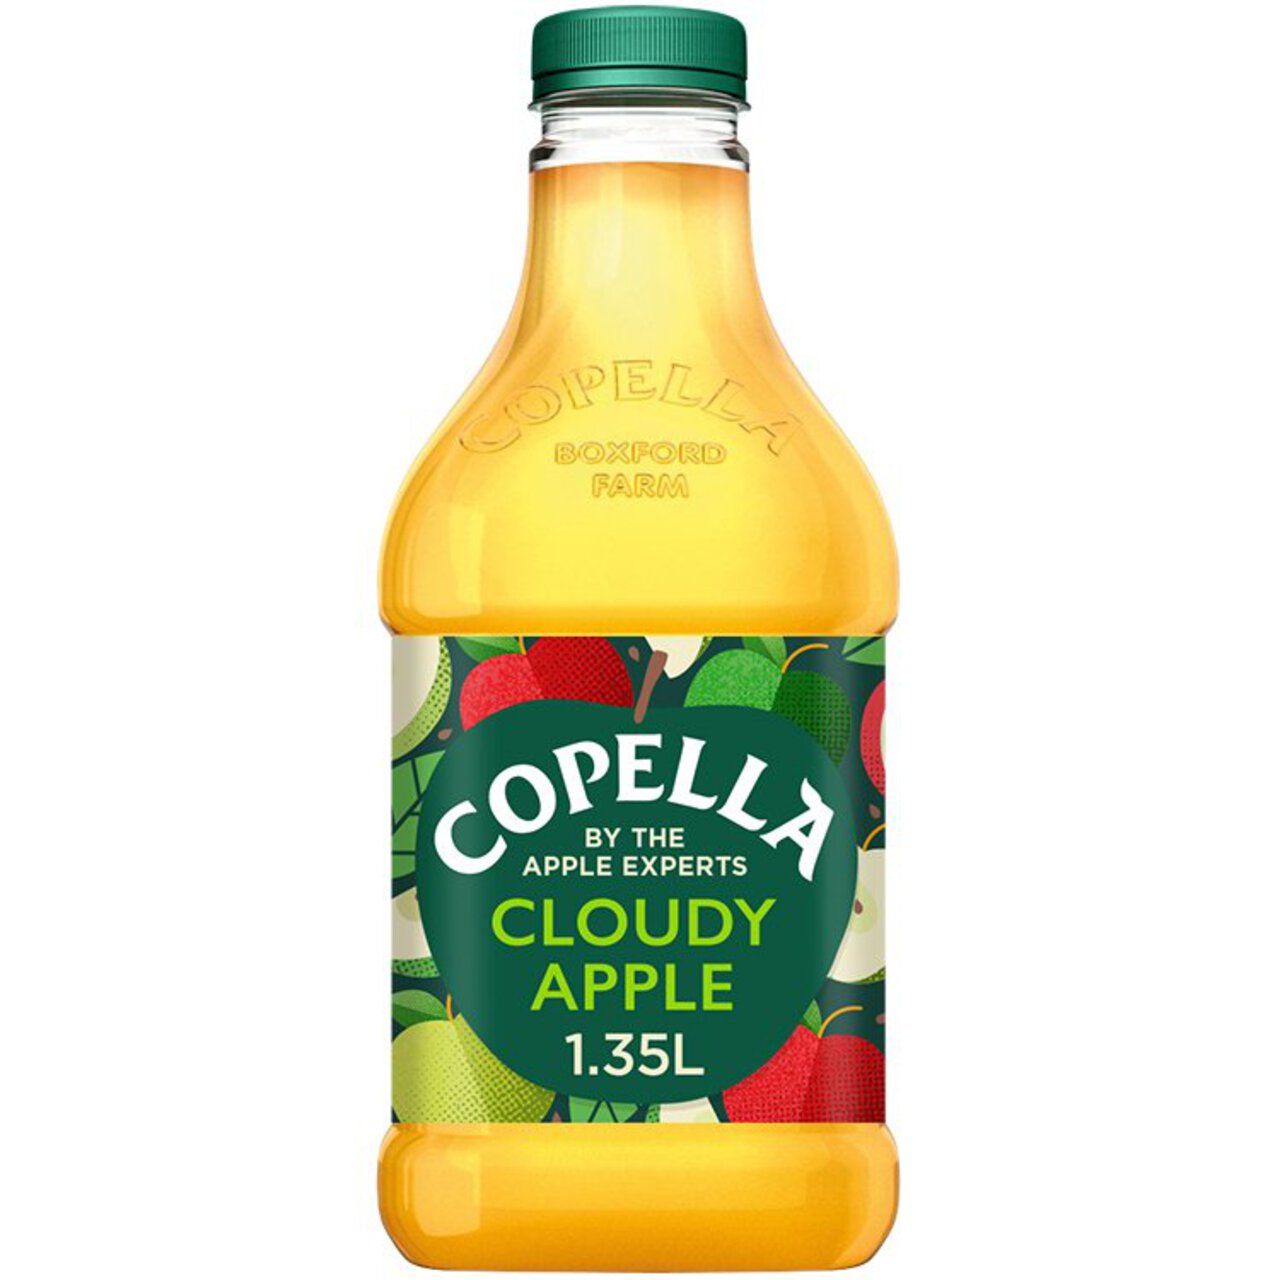 Copella Cloudy Apple Fruit Juice 1.35l